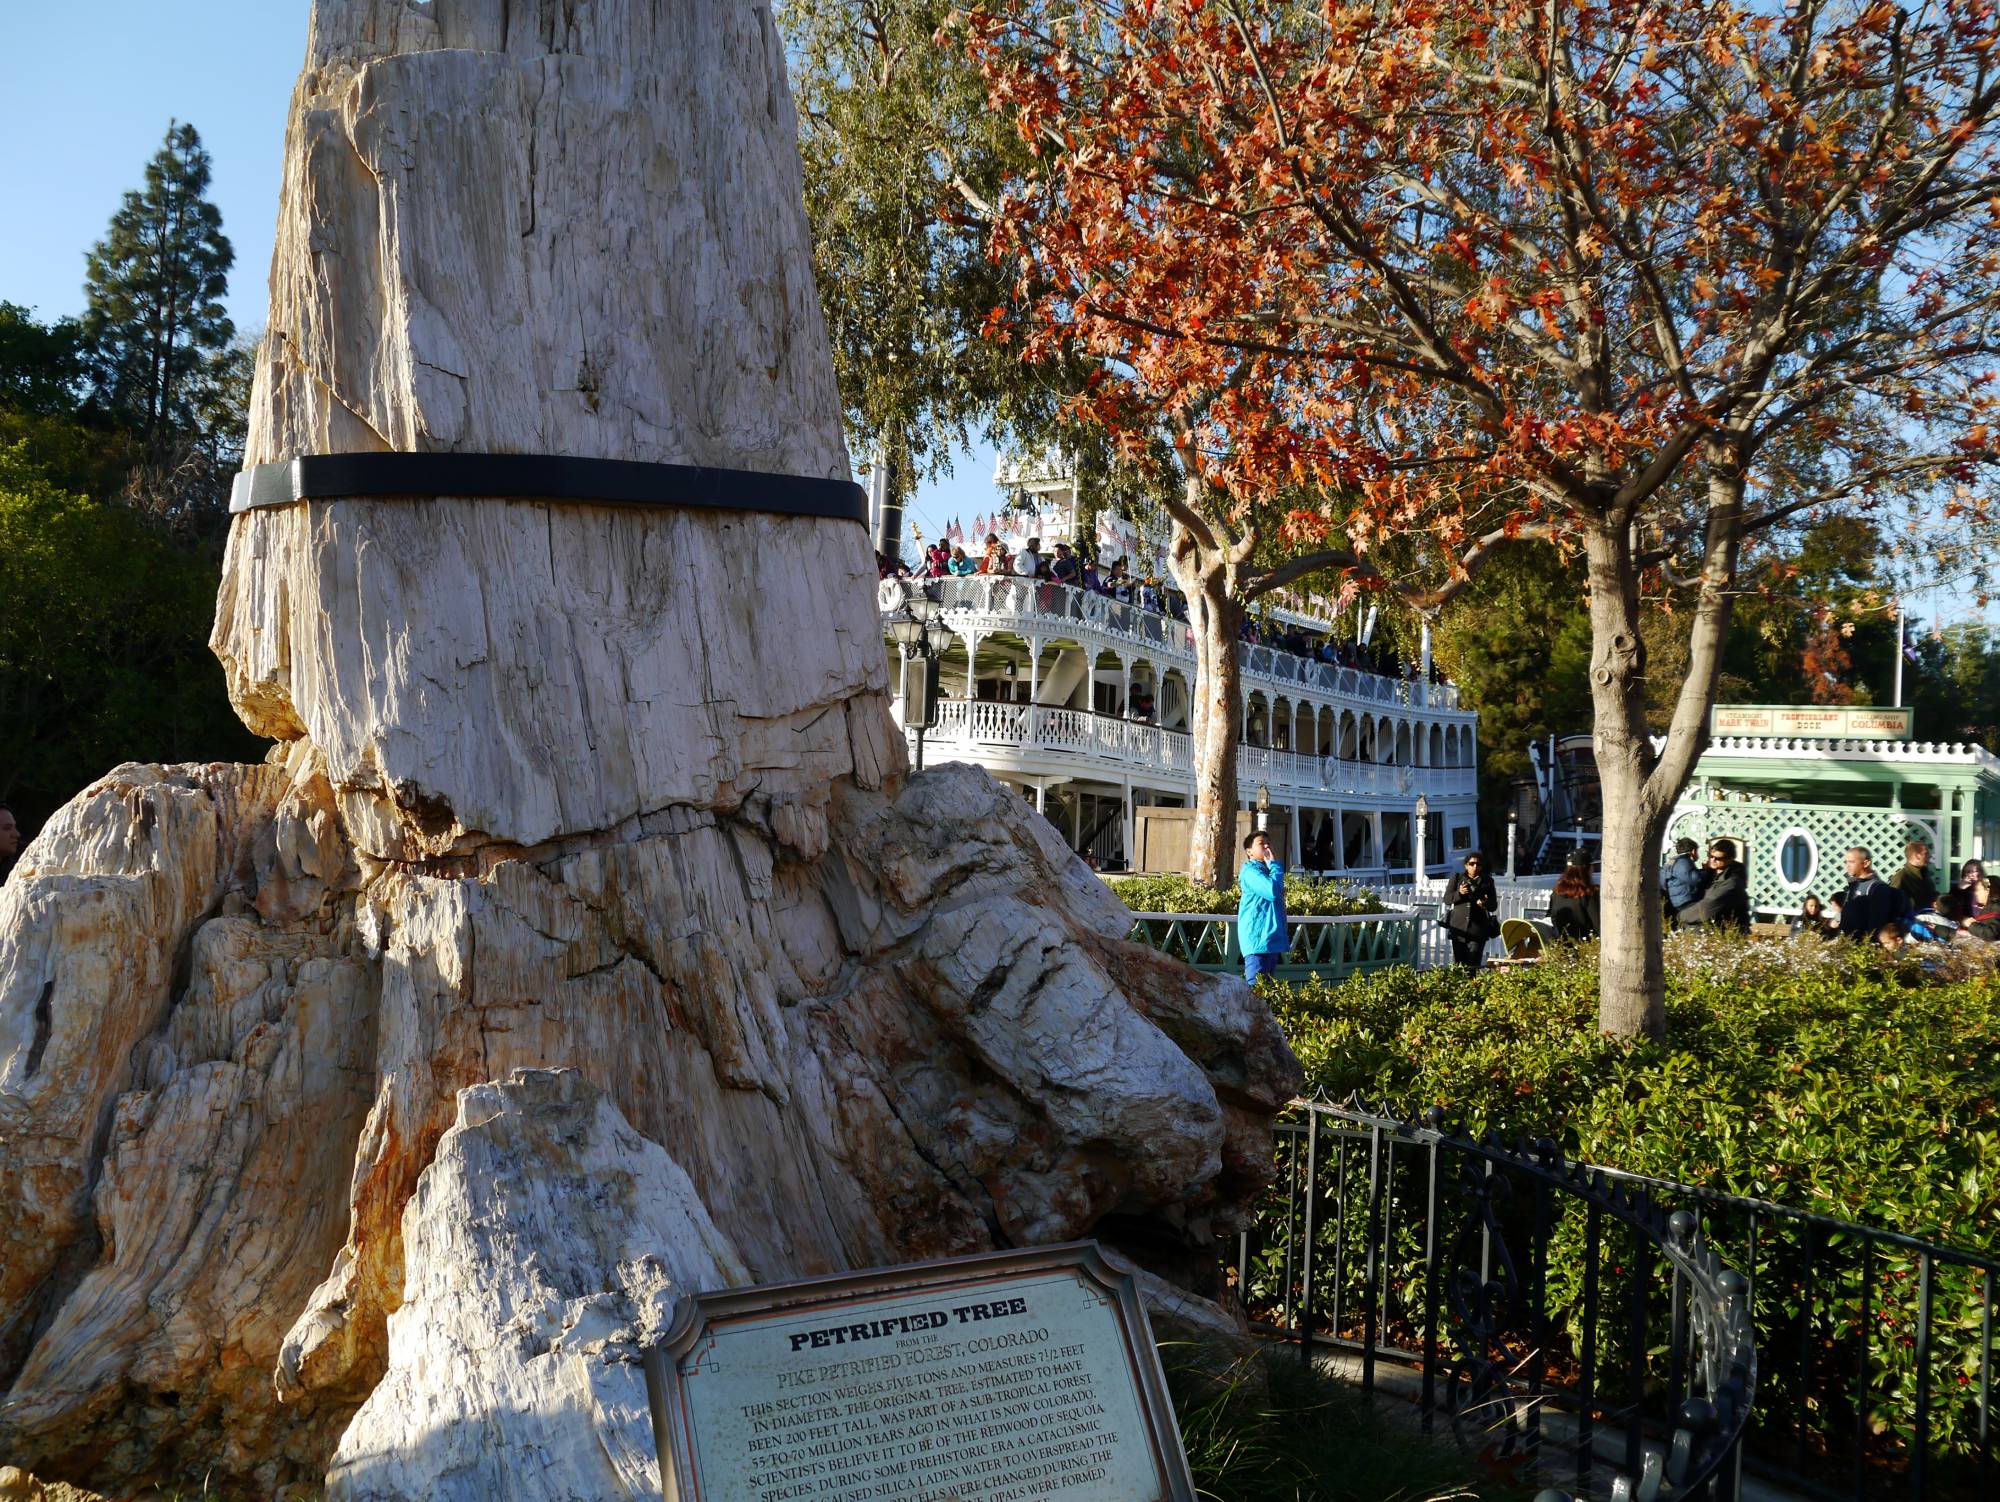 Disneyland Park - Petrified Tree and Mark Twain